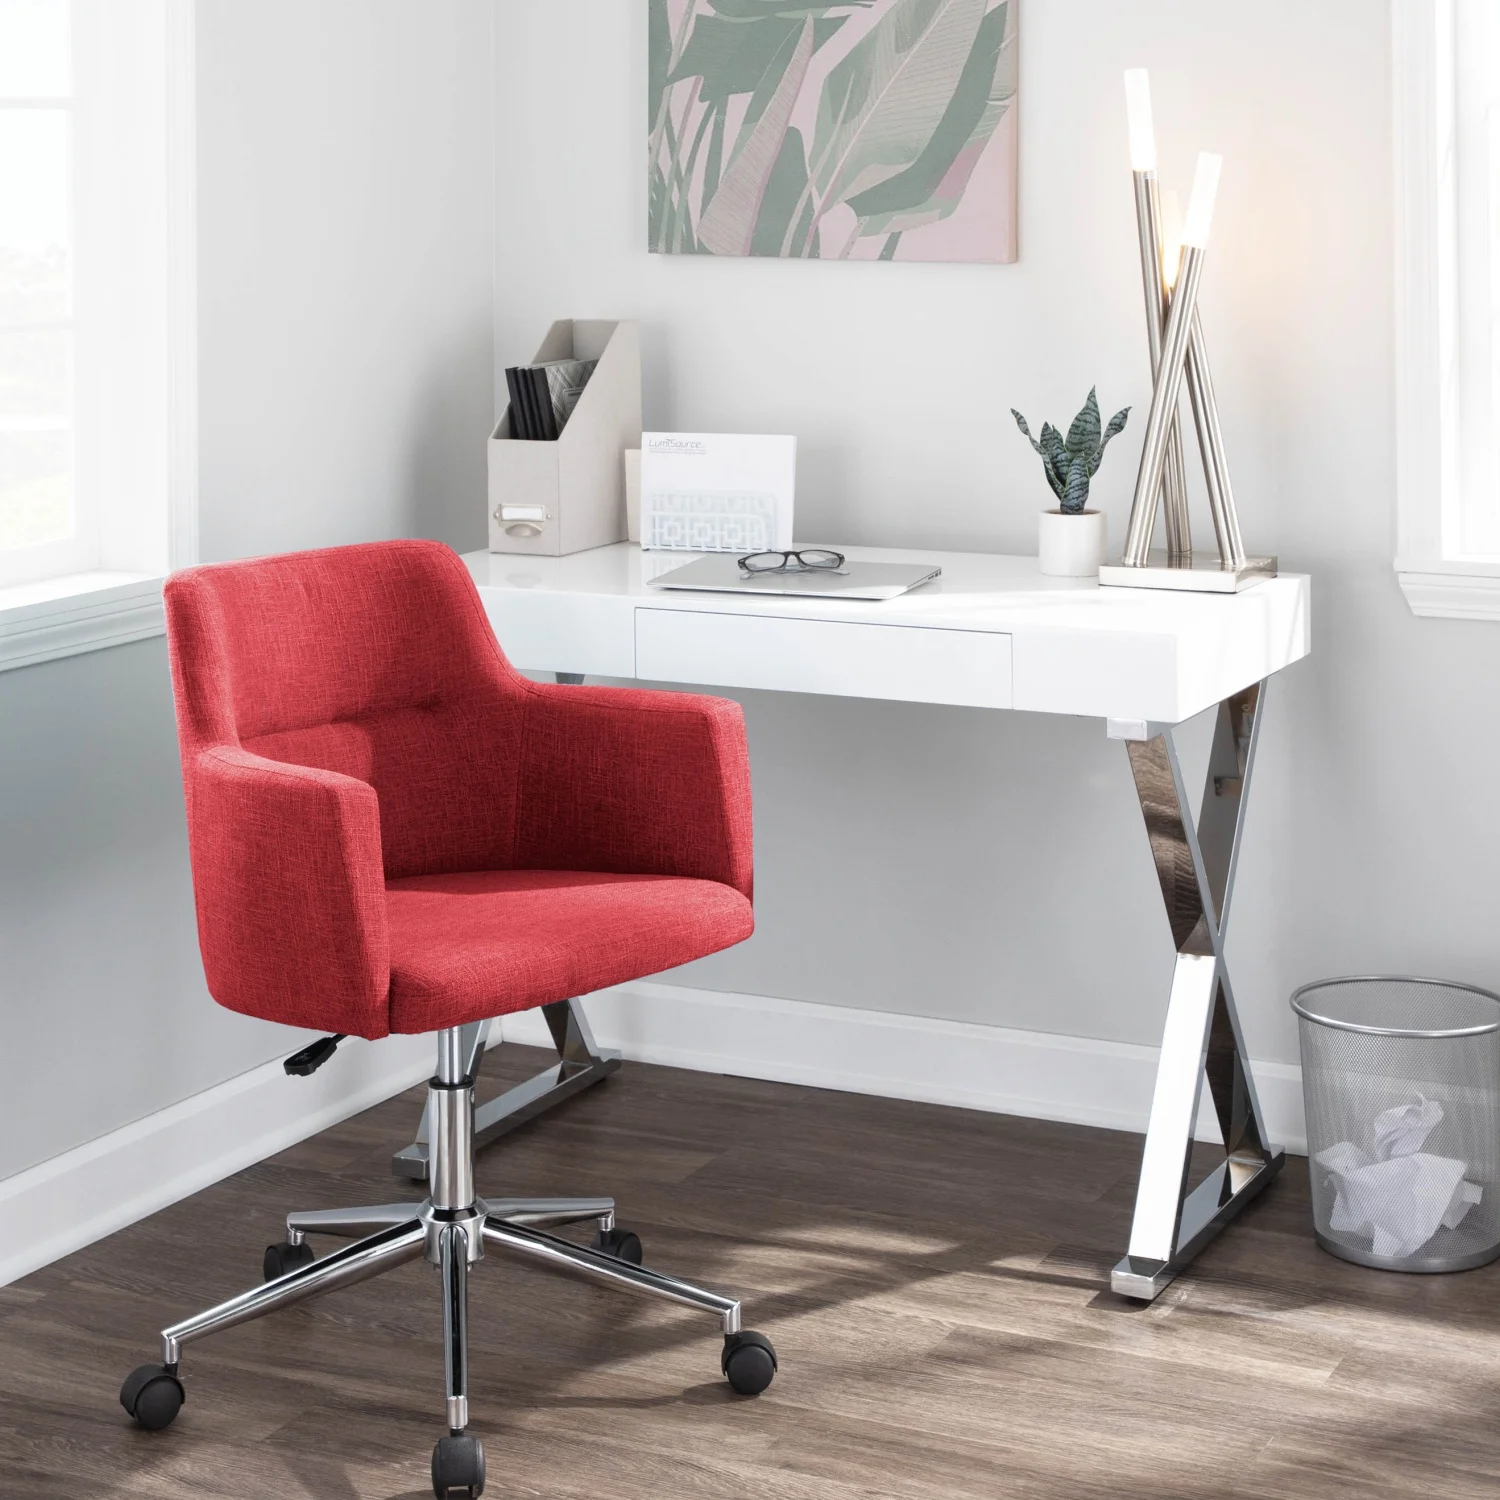 كرسي مكتب أحمر عصري قابل للتعديل من LumiSource ، دعم مريح ، تصميم حديث